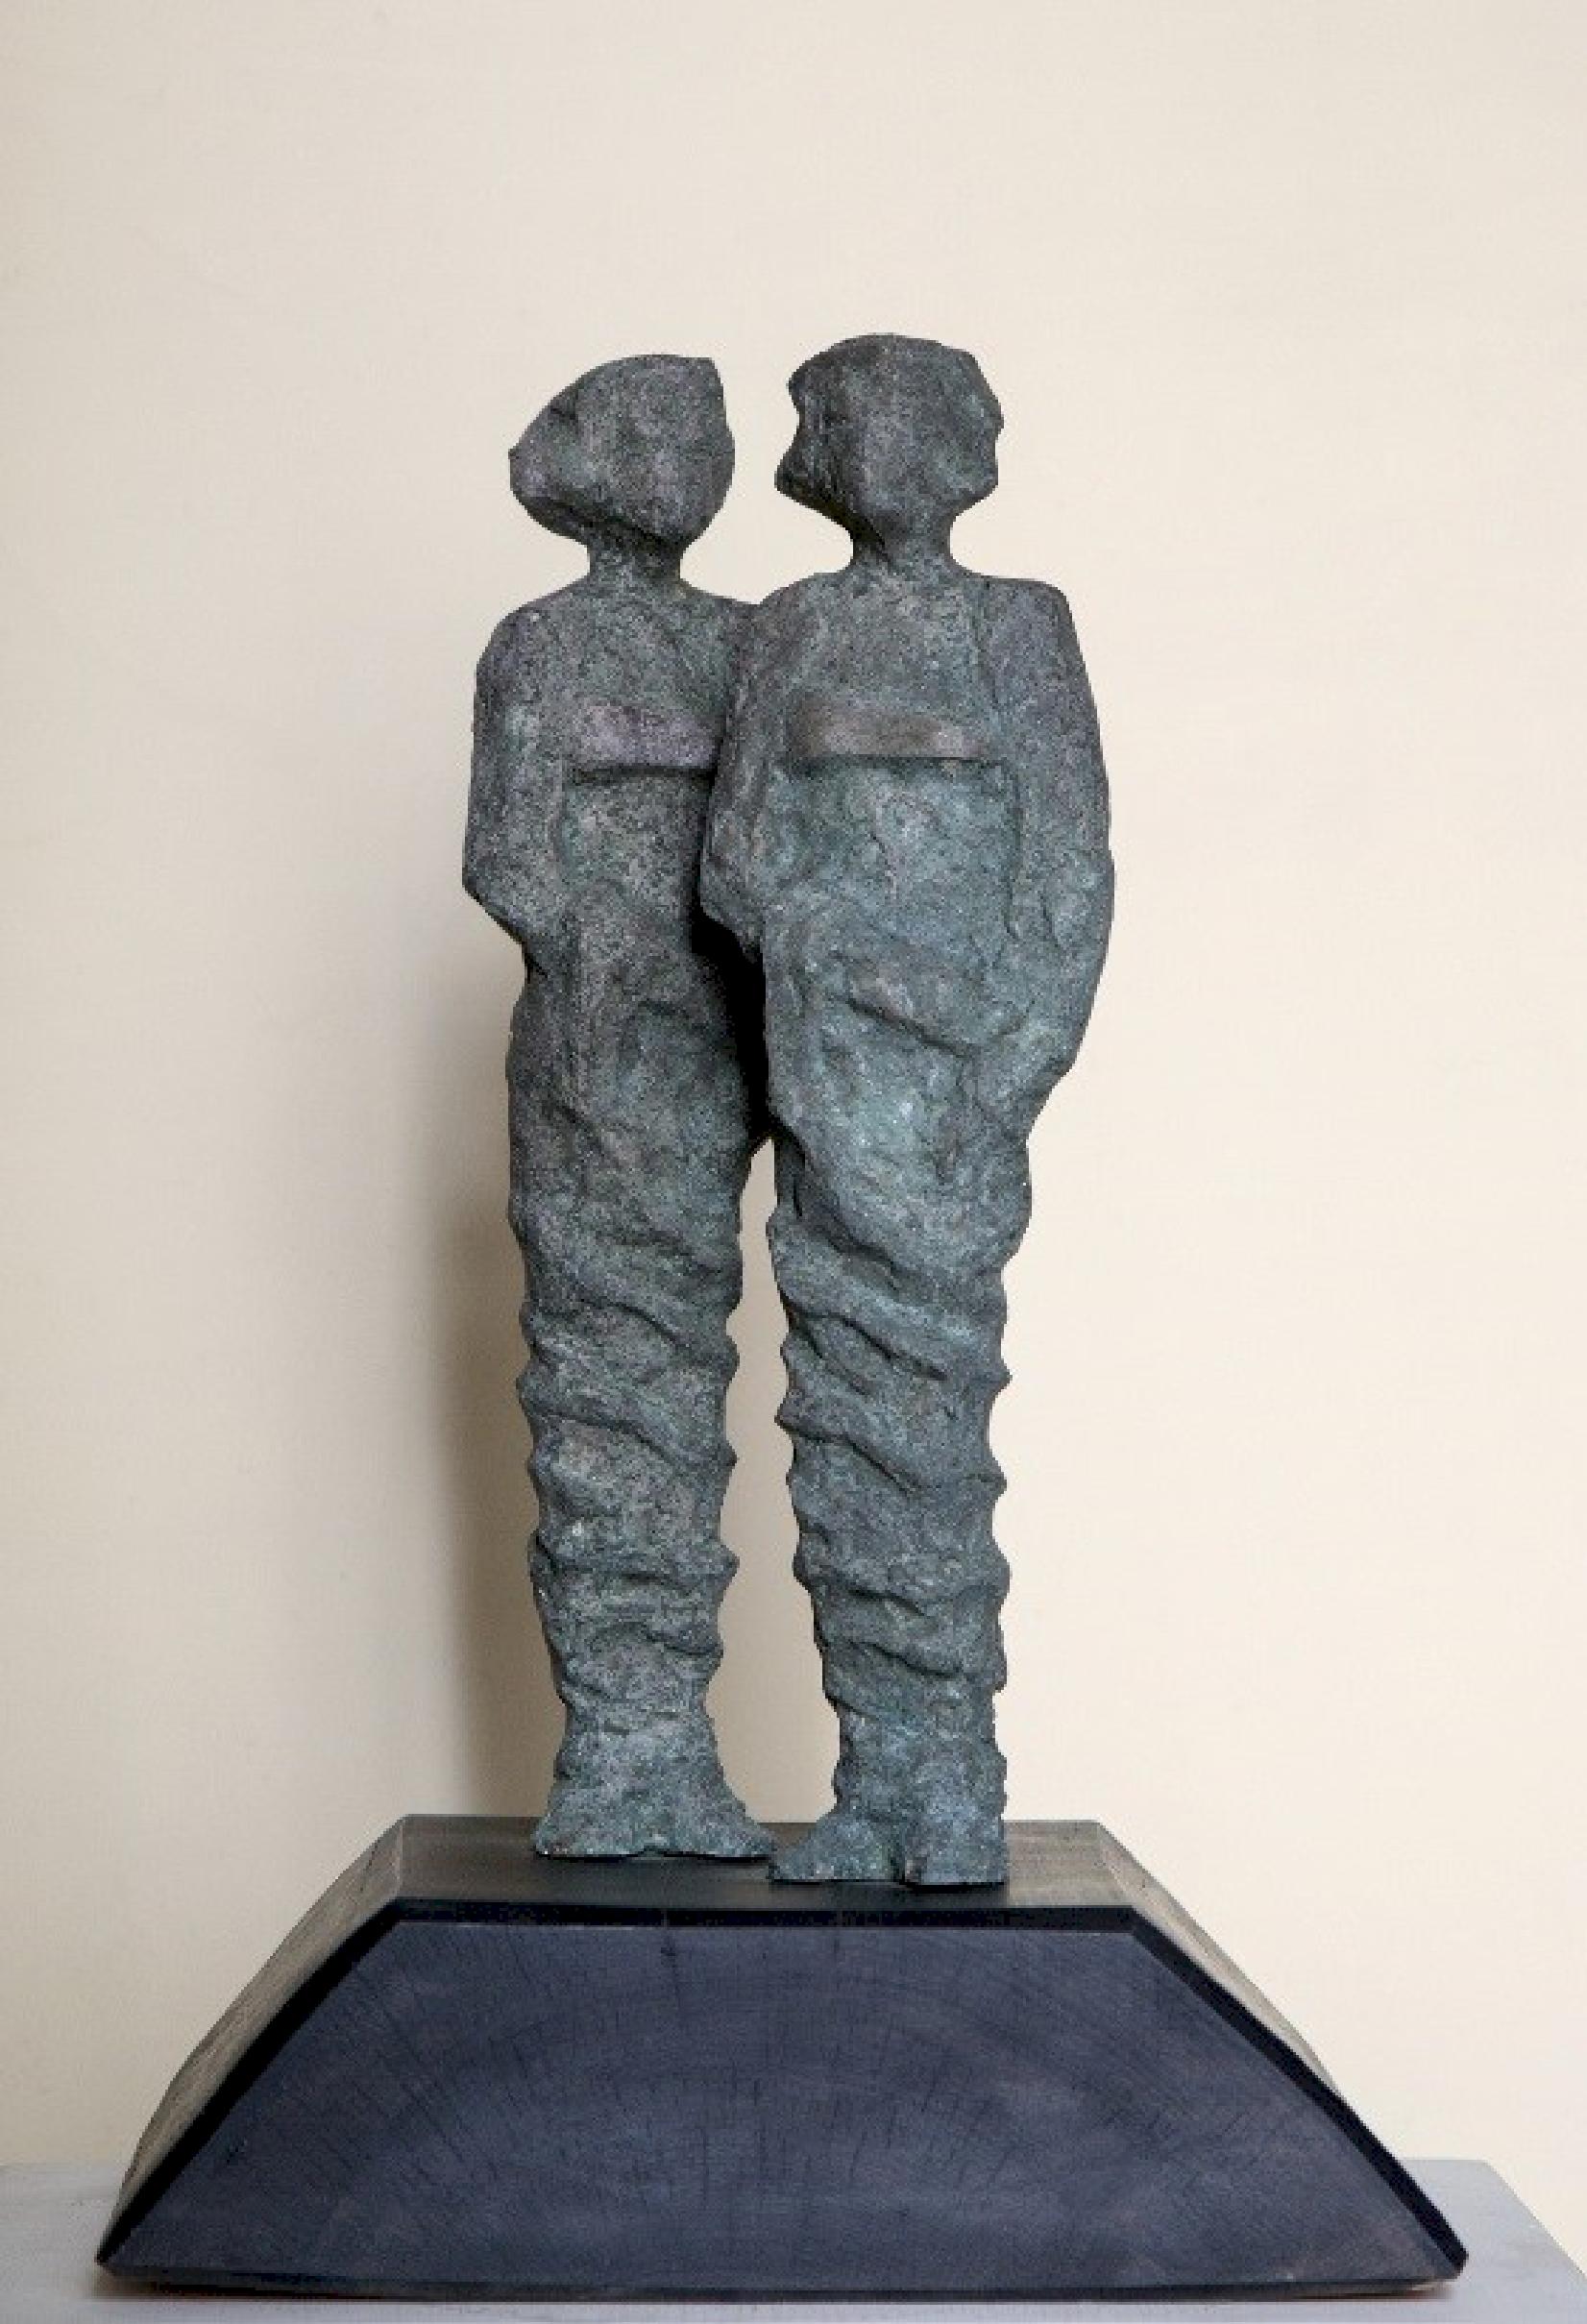 Sculpture en bronze « Sisters » de 14 pouces x 6 pouces x 4 pouces par Sarkis Tossonian		

Sarkis Tossoonian est né à Alexandrie en 1953. Il est diplômé de la Faculté des Beaux-Arts/Sculpture en 1979. Il a commencé à exposer dans des expositions